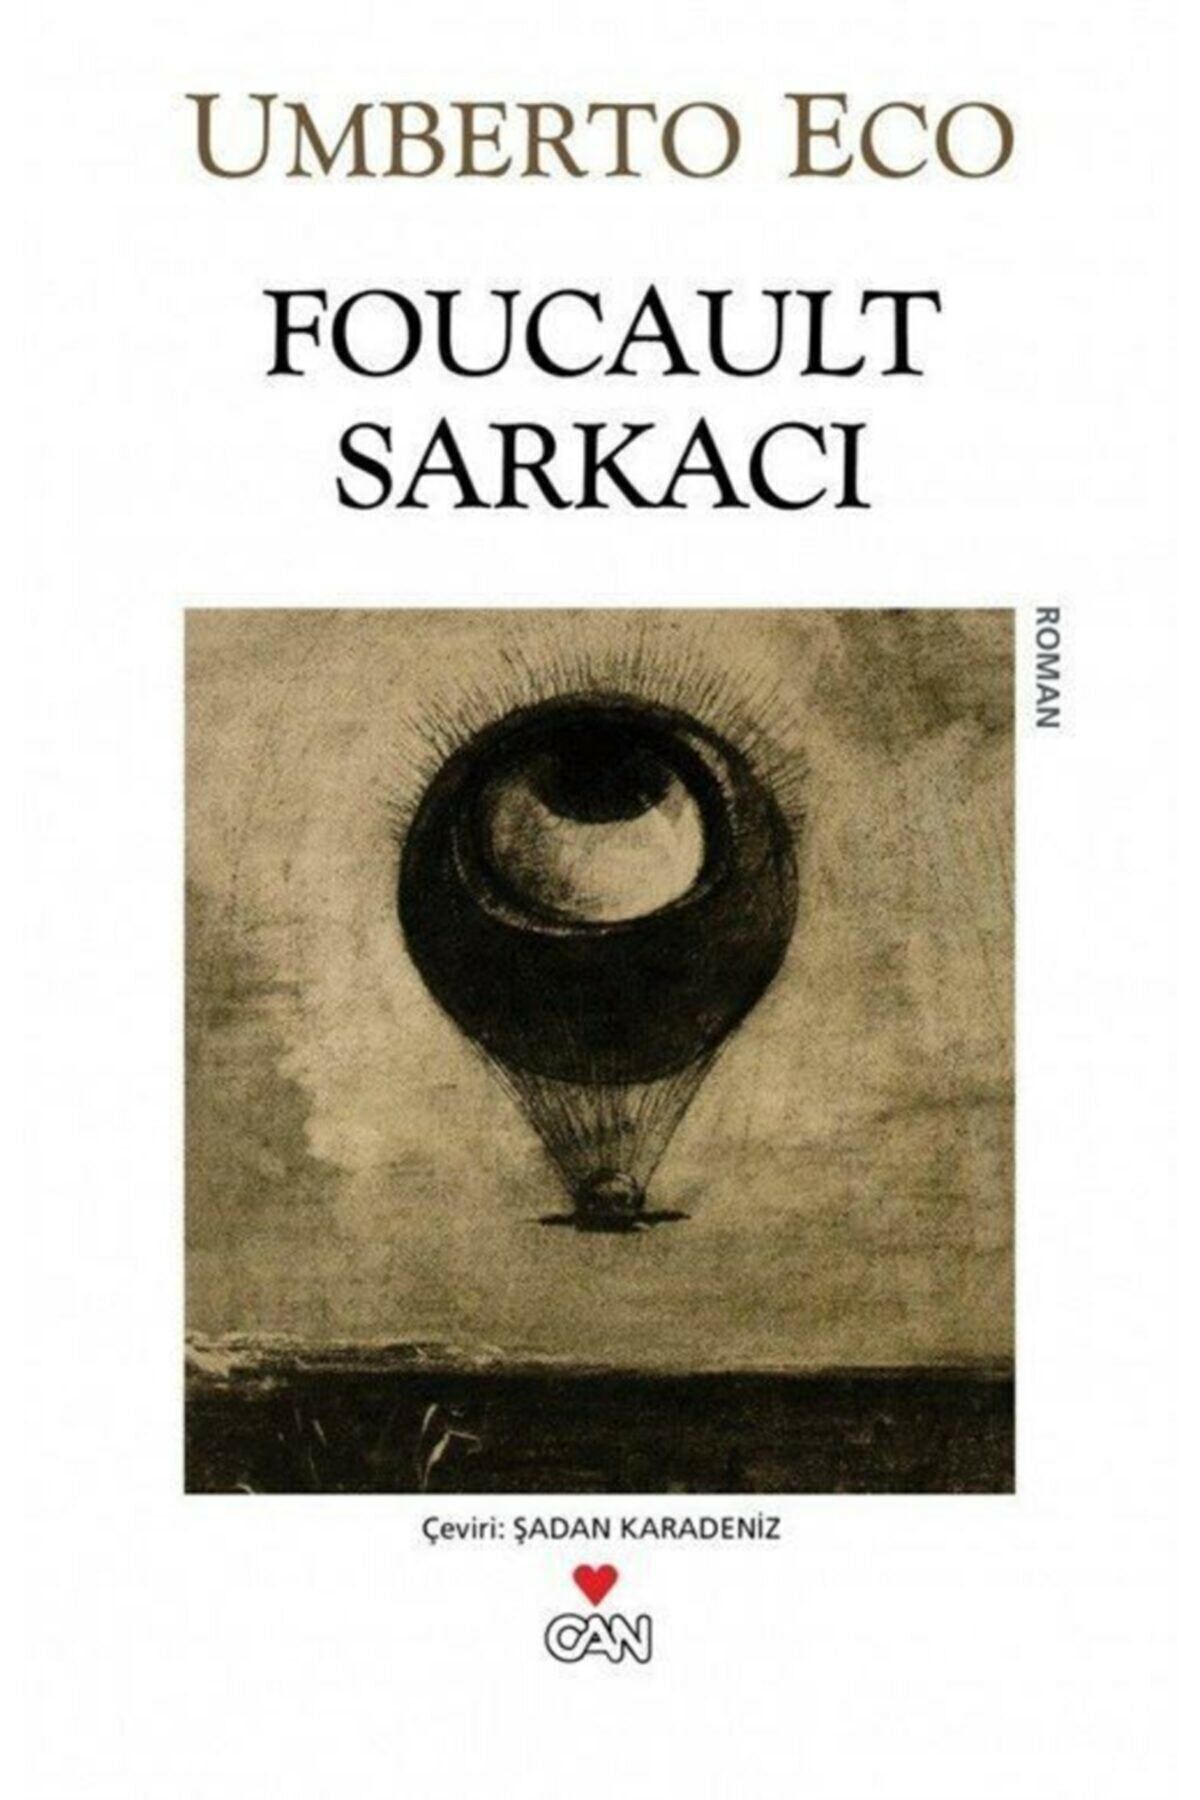 Can Yayınları Foucault Sarkacı - Umberto Eco